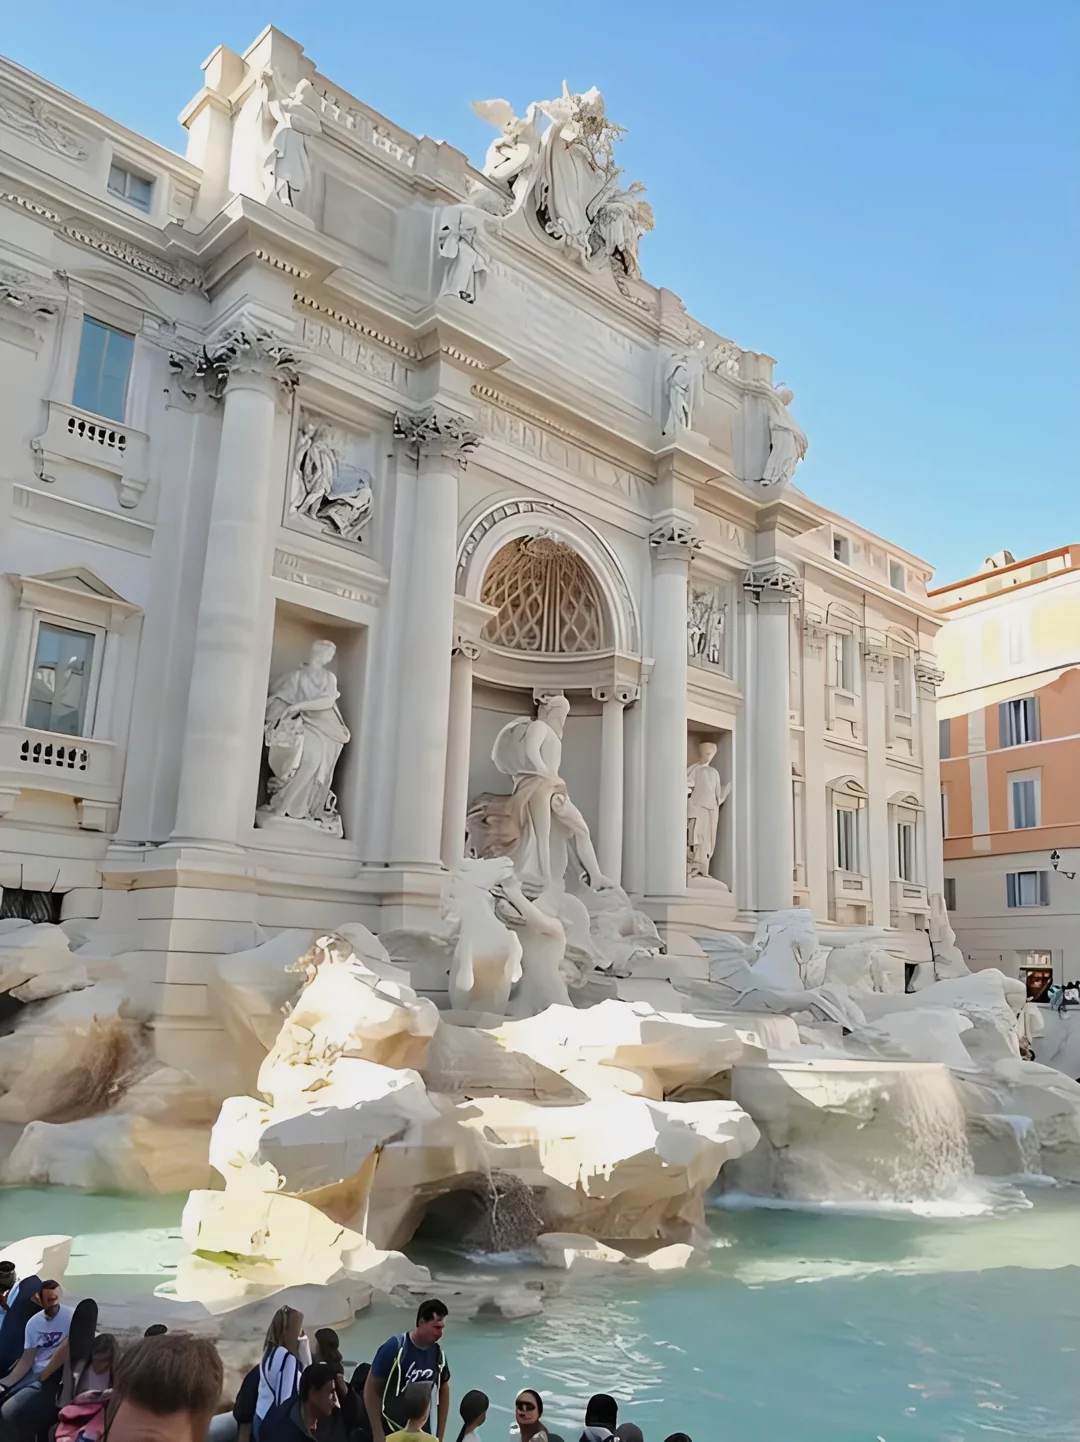 罗马特雷维喷泉-1762年建成-世界上最著名的喷泉——又叫许愿池喷泉，位于意大利罗马的三条街交叉口 